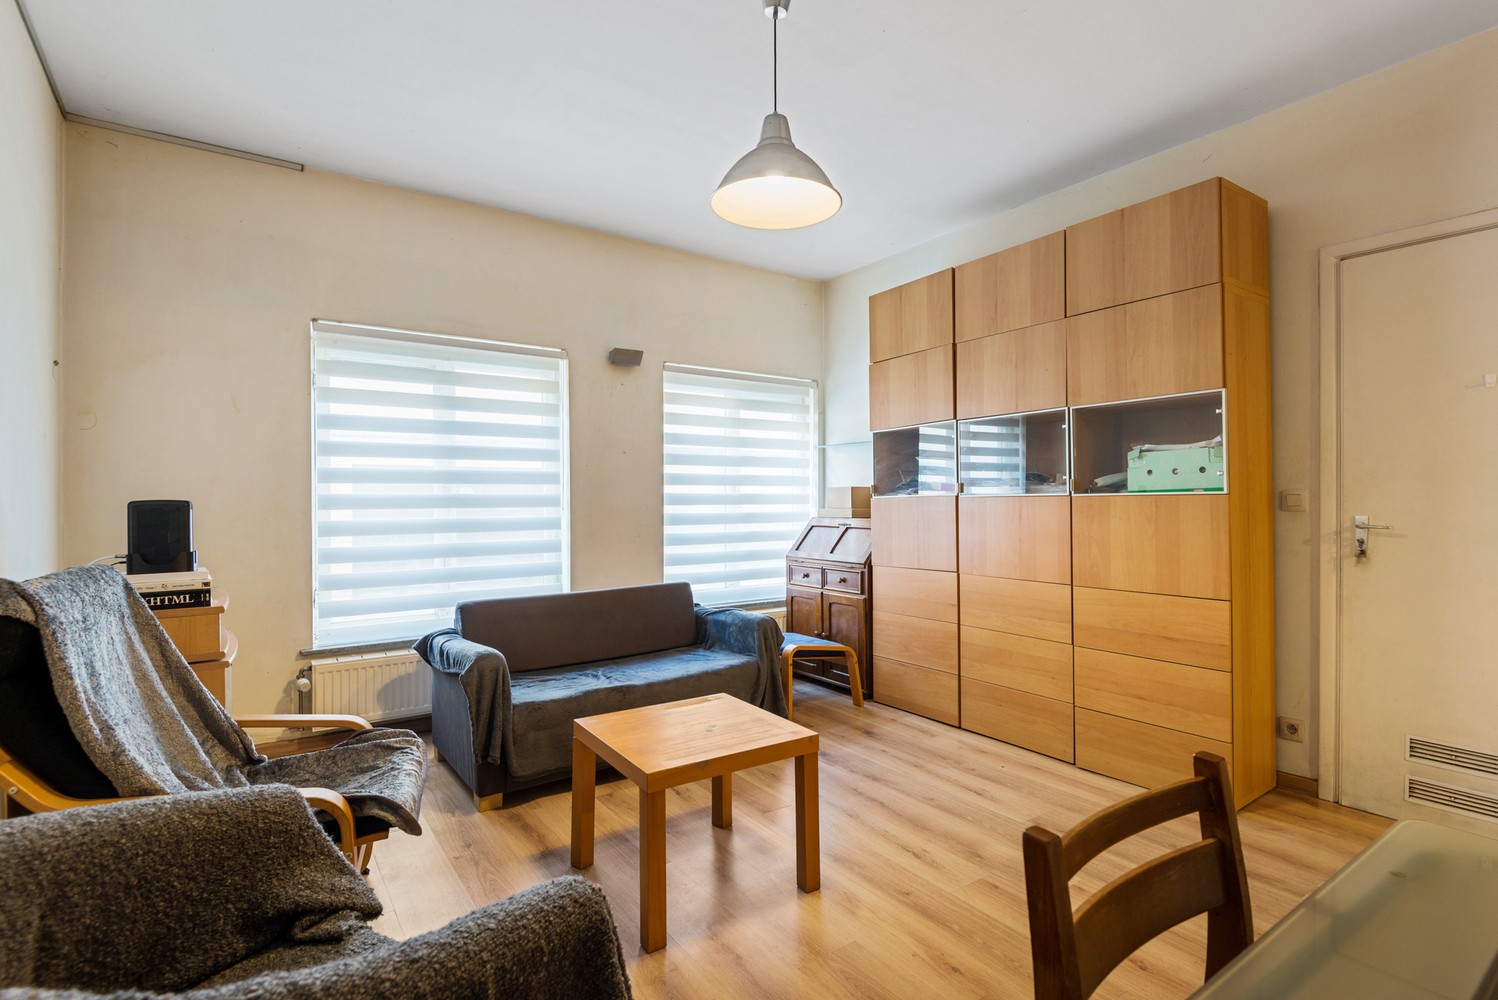 Gelijkvloers appartement met 1 slaapkamer te koop in Mechelen afbeelding 5